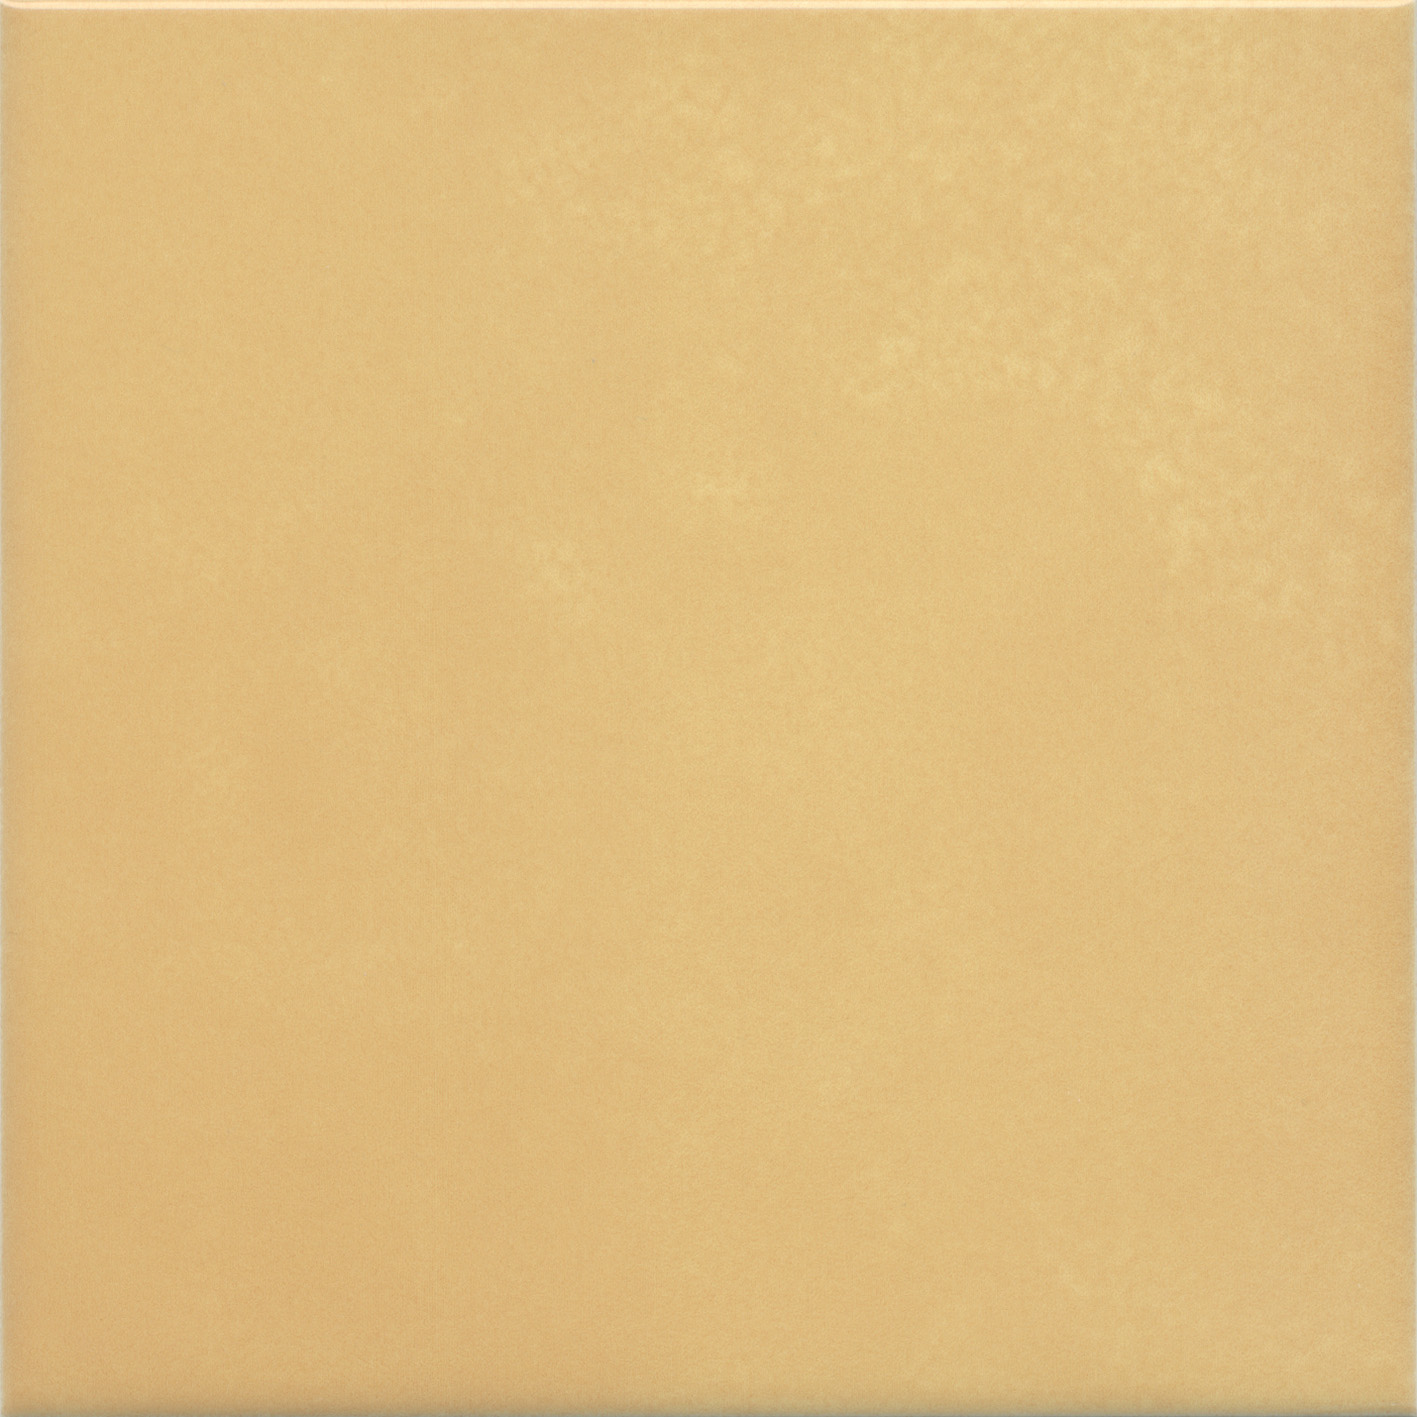 Плитка Kerama Marazzi Витраж желтый 17064 15x15 см плитка kerama marazzi салинас беж 15x15 см 17057